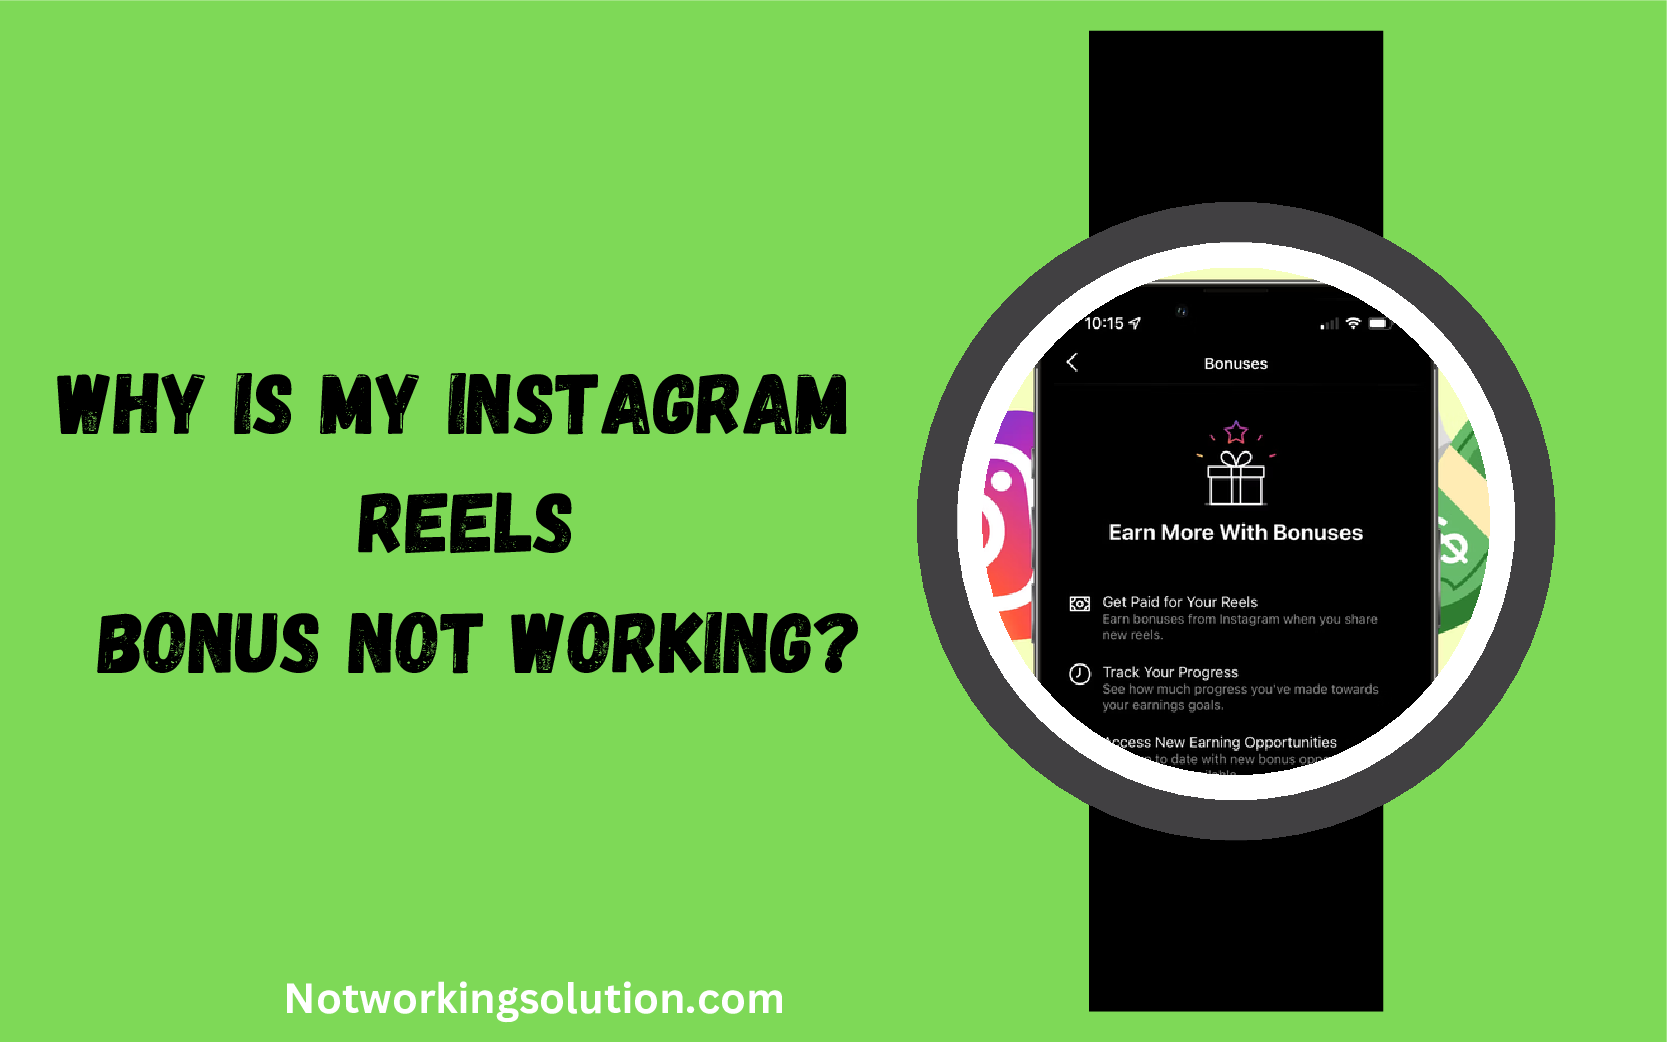 Why Is My Instagram Reels Bonus Not Working?